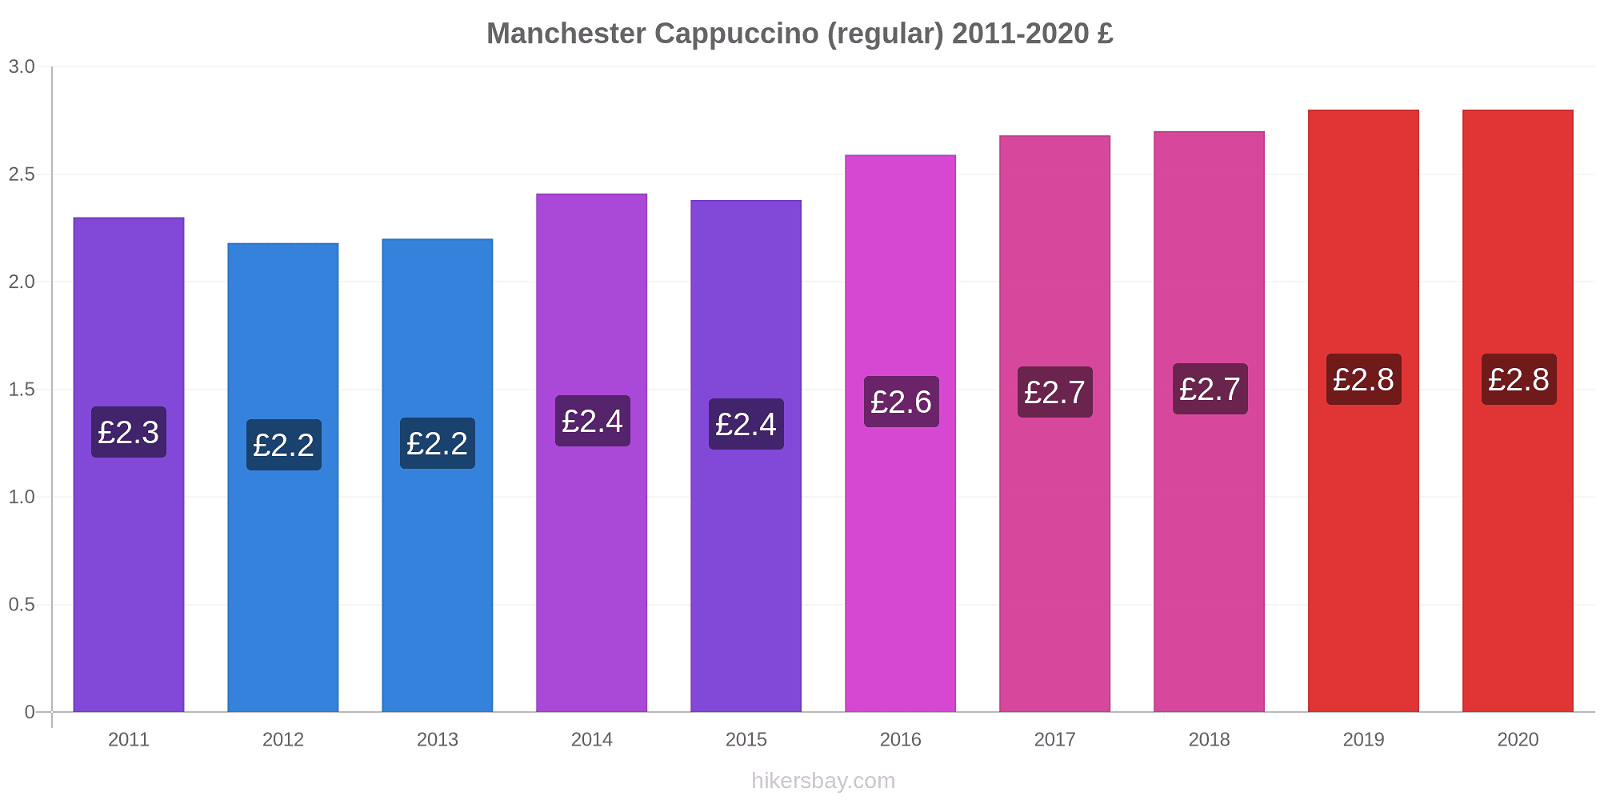 Manchester price changes Cappuccino (regular) hikersbay.com